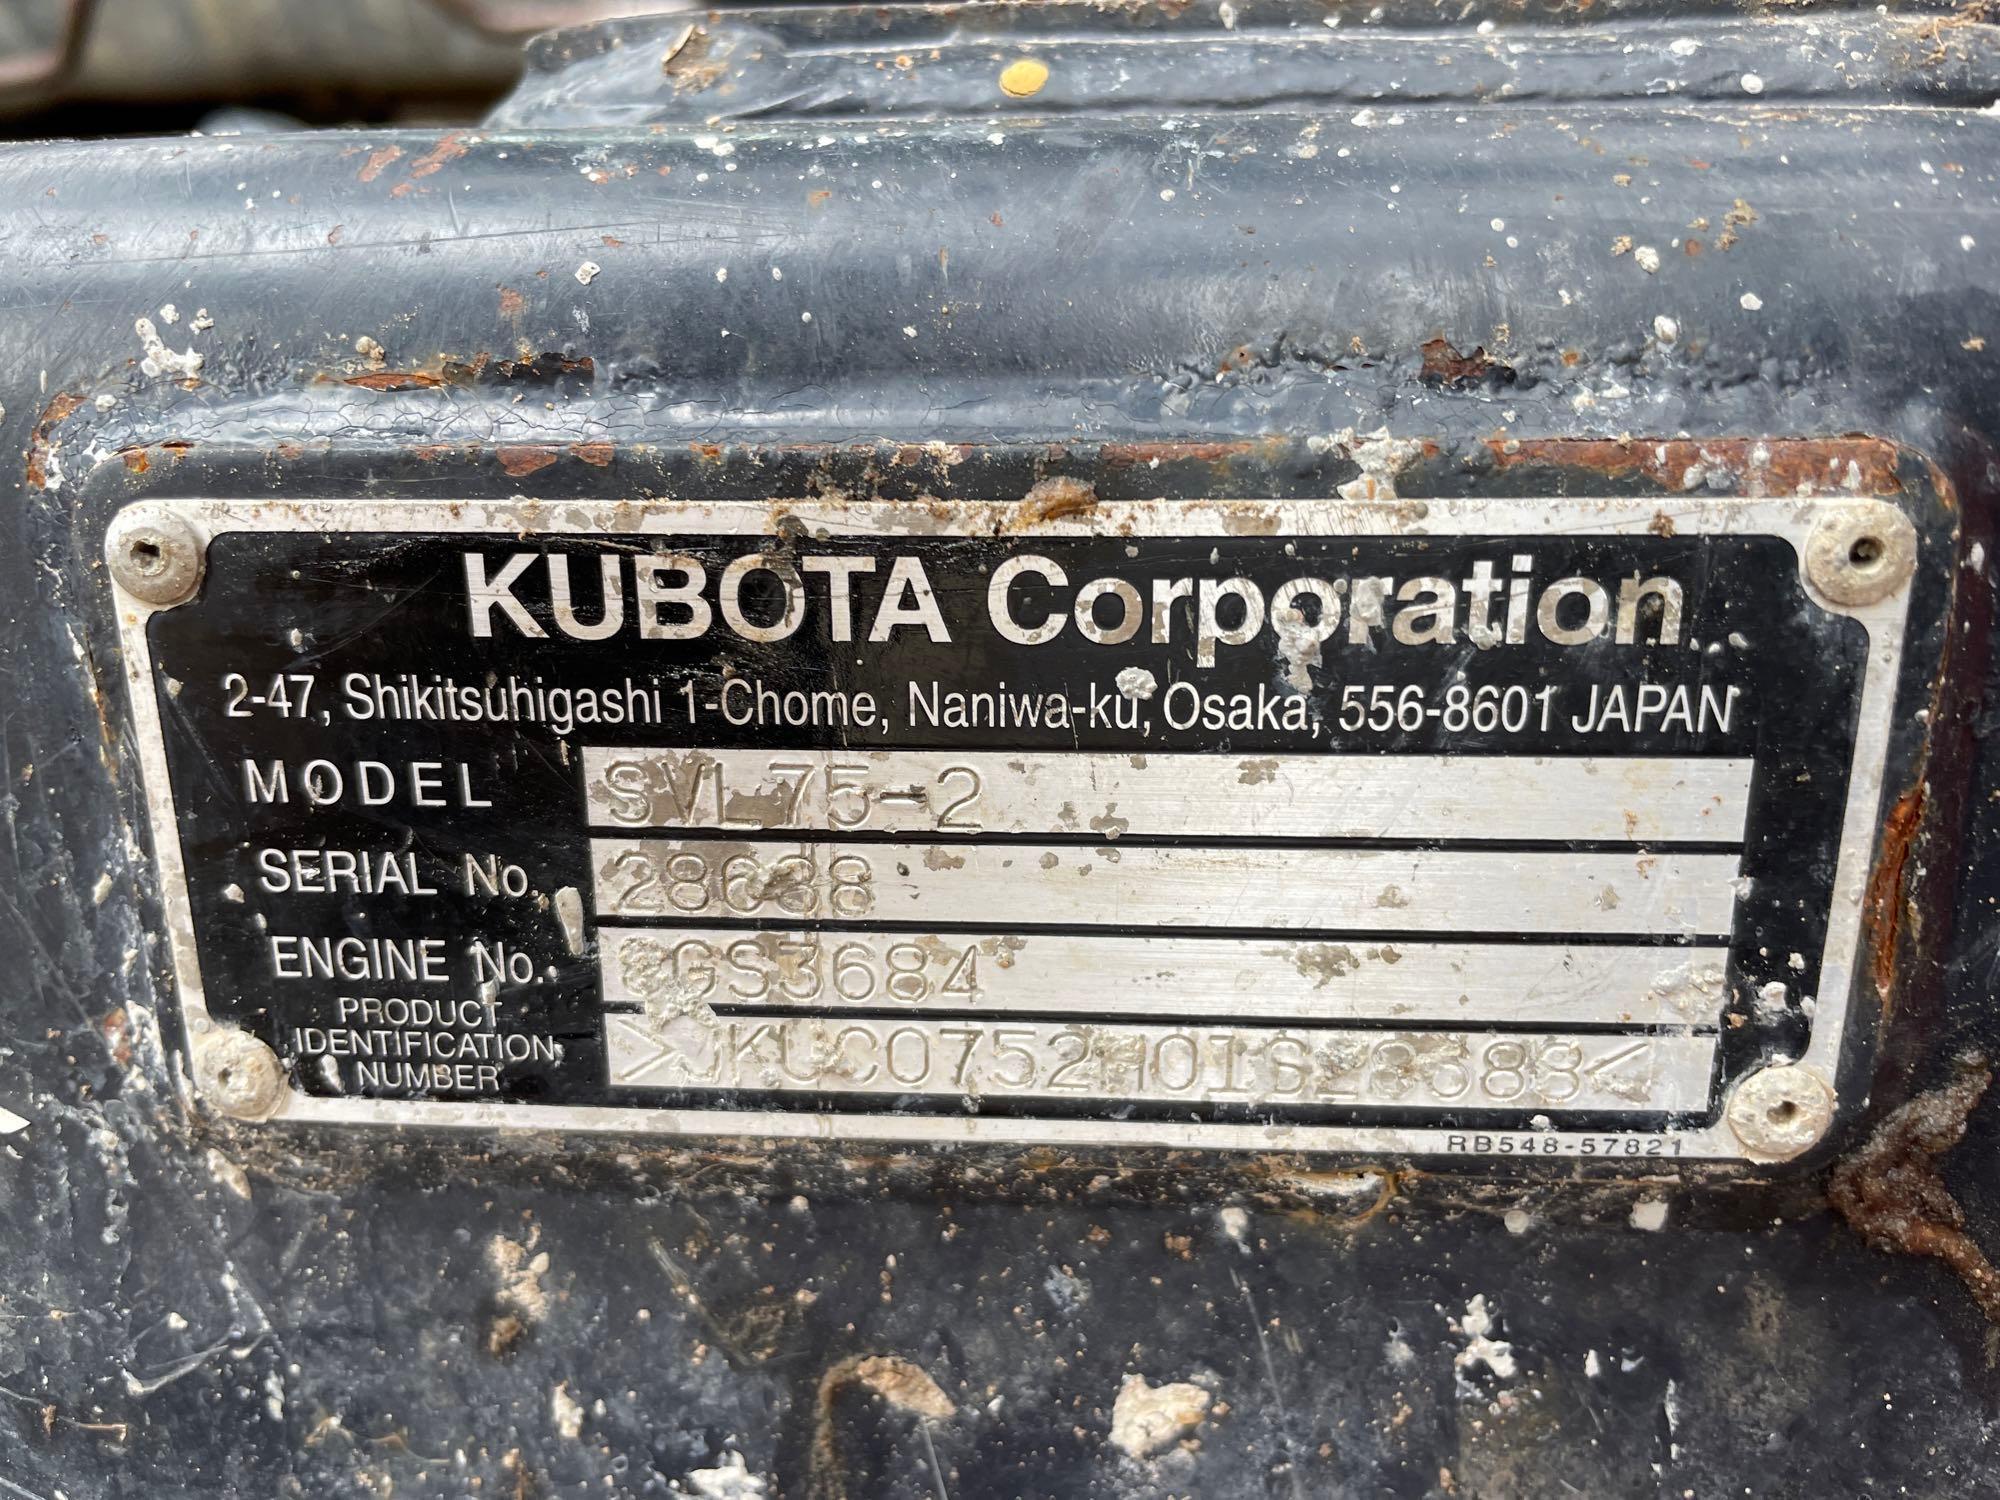 2017 Kubota SVL75-2 Tracked Skid Steer Loader